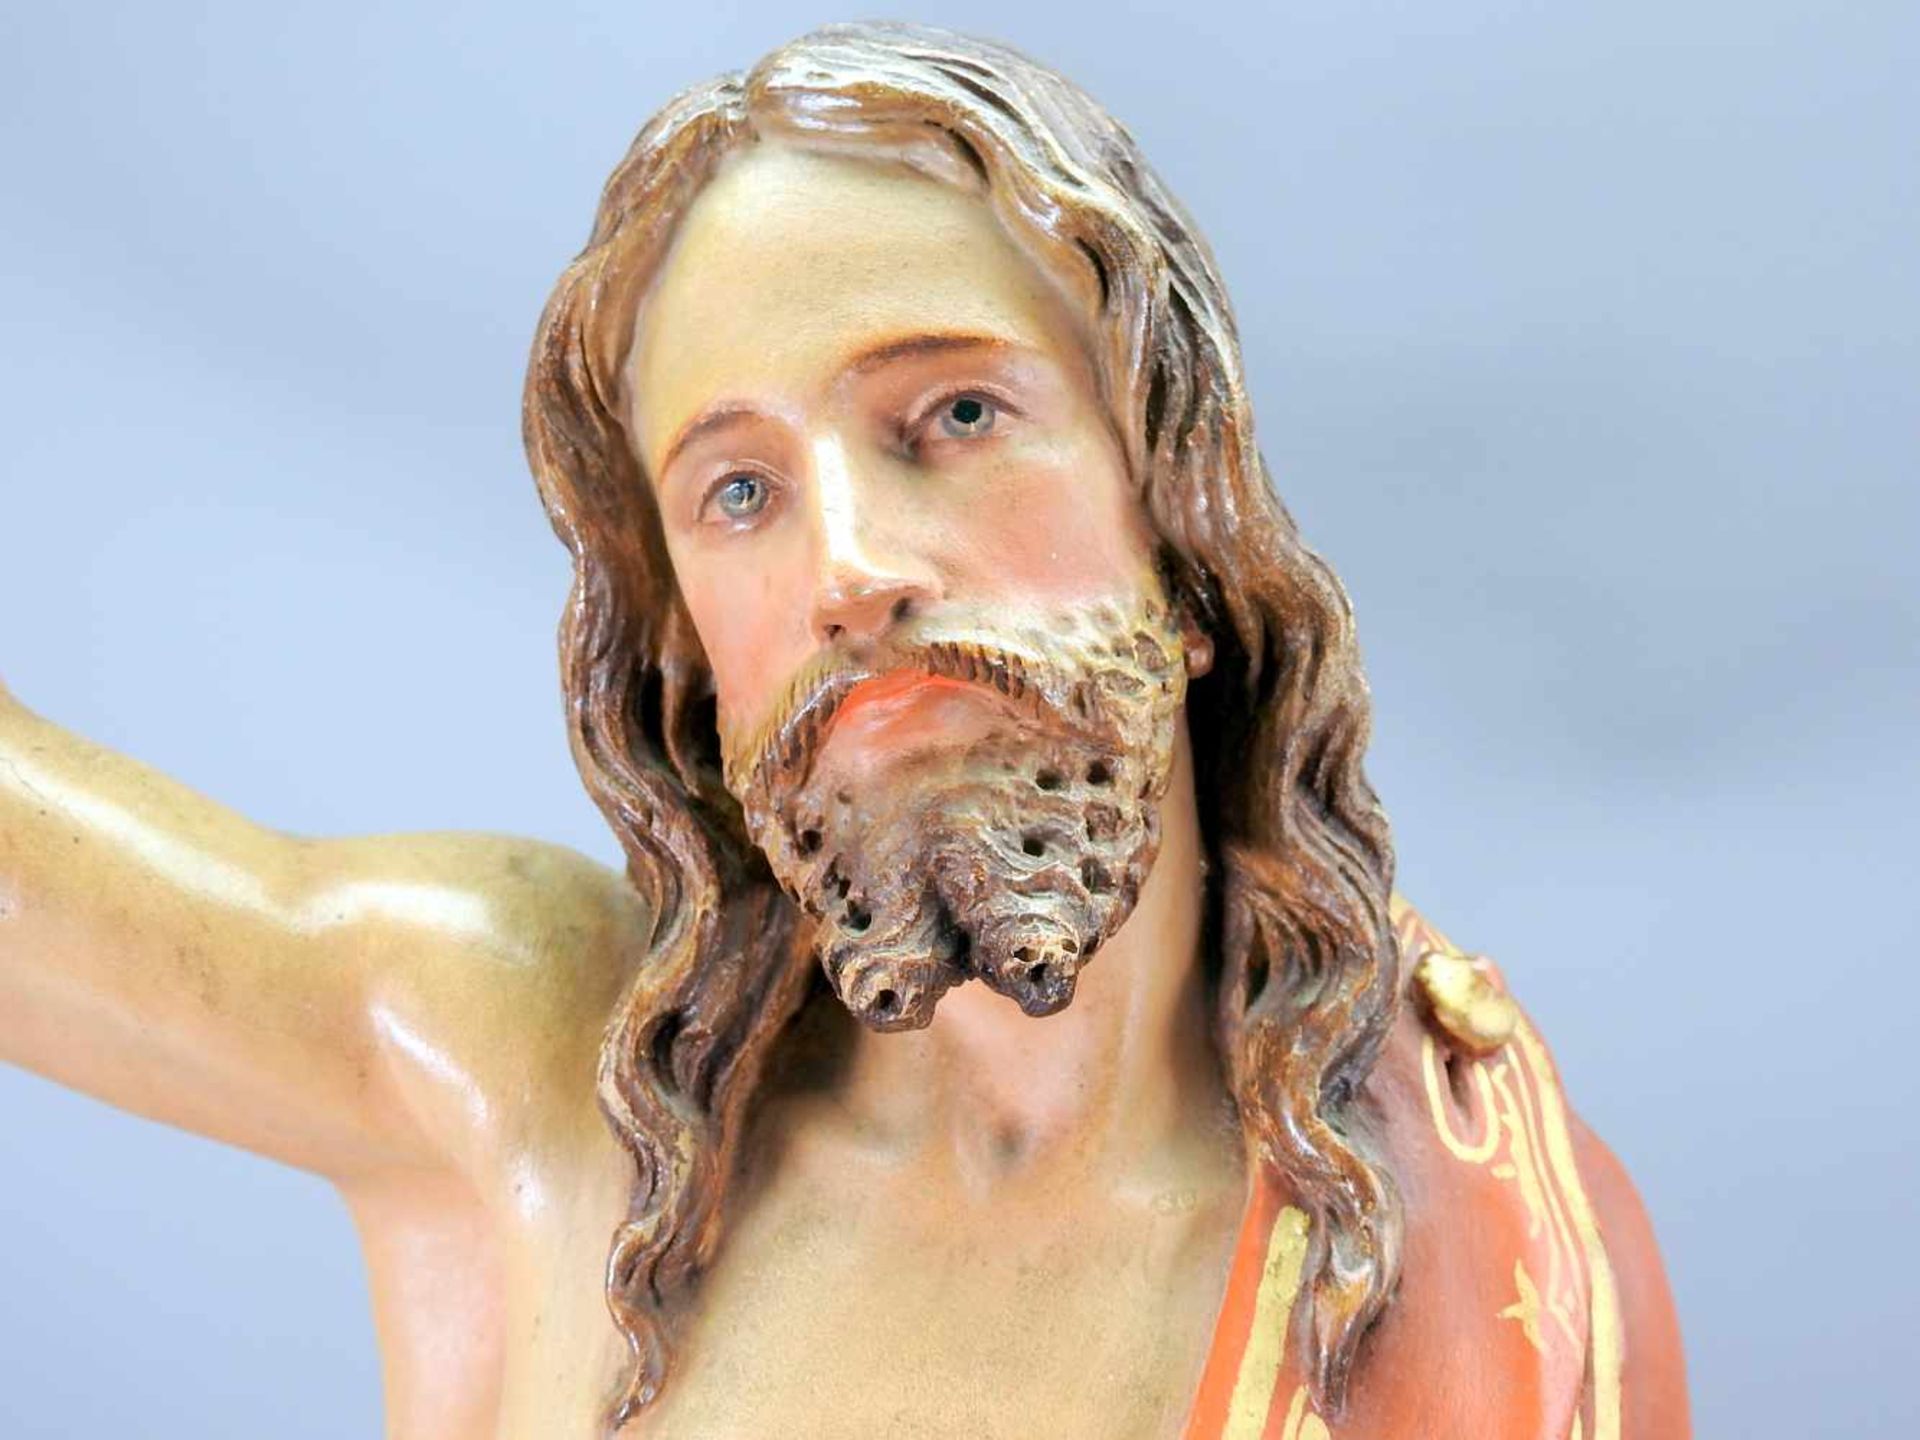 Christus mit SegensgestusHolzgeschnitzt, farbig gefasst. Segnender Christus in faltenreichem Gewand, - Bild 3 aus 4